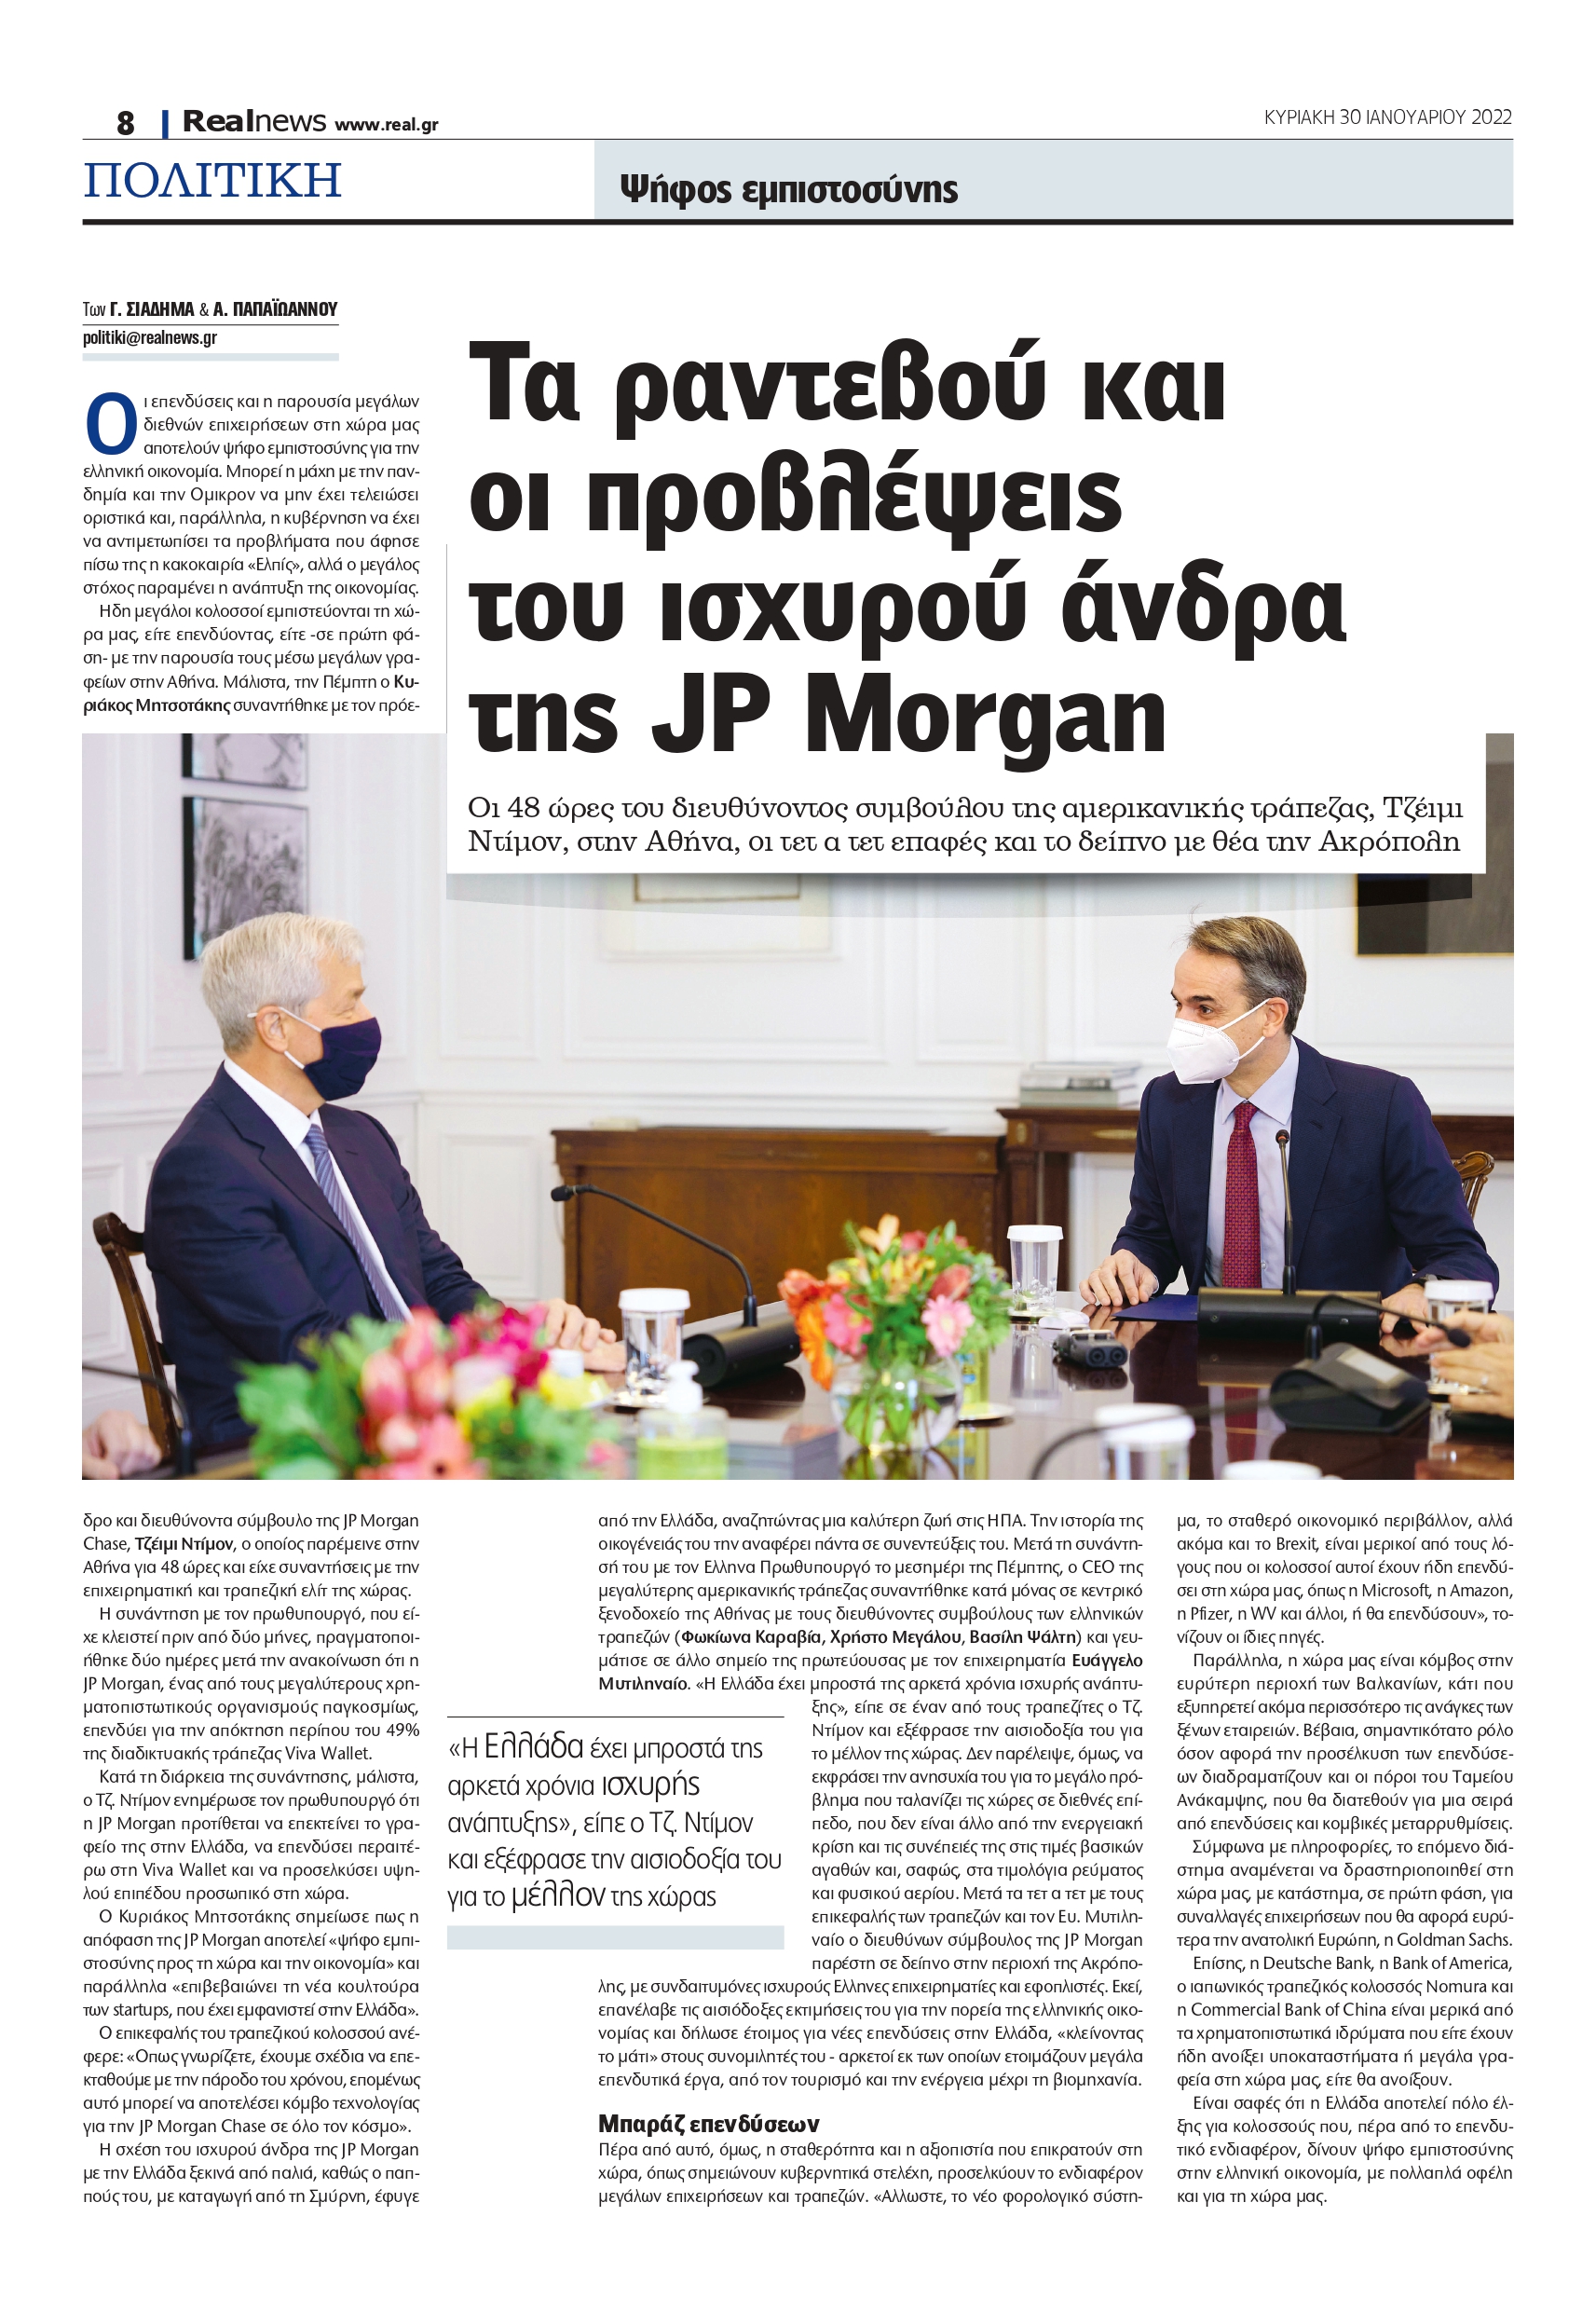 Τζέιμι Ντίμον - JP Morgan